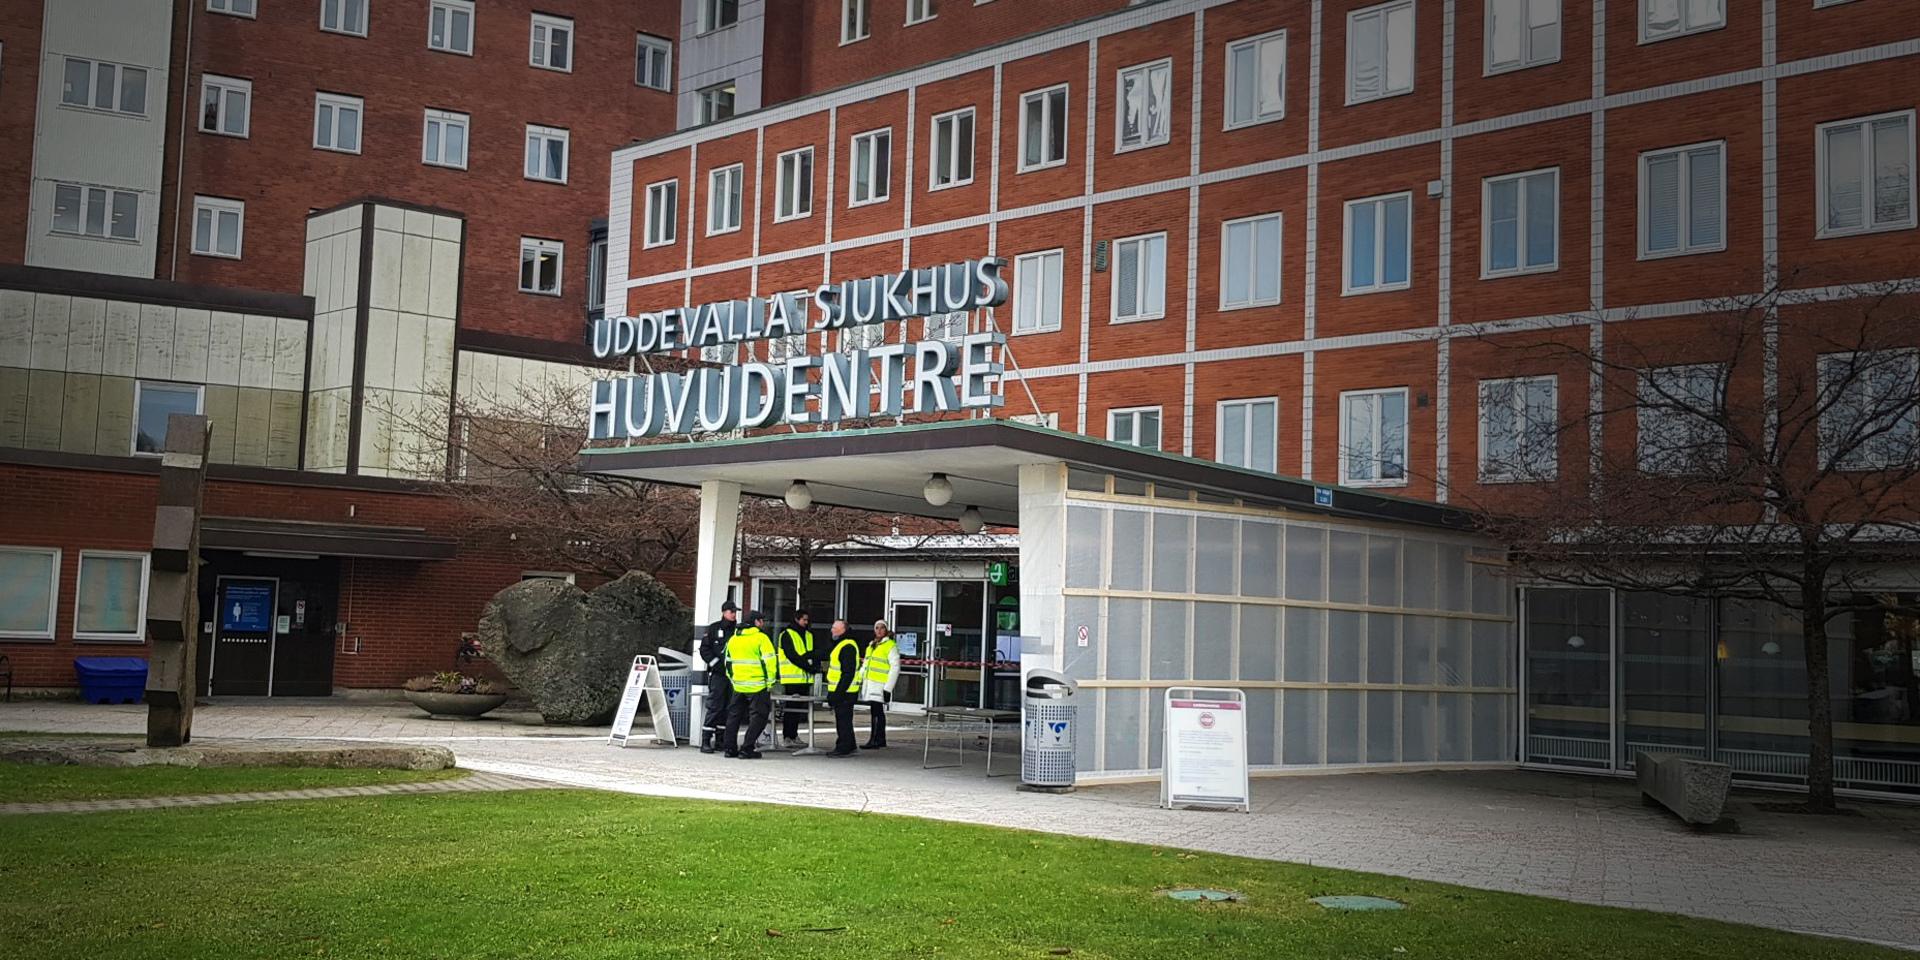 Uddevalla sjukhus och Näl återinför besöksrestriktioner från och med torsdag, det meddelar NU-sjukvården under onsdagen. Bilden är tagen vid ett tidigare tillfälle.